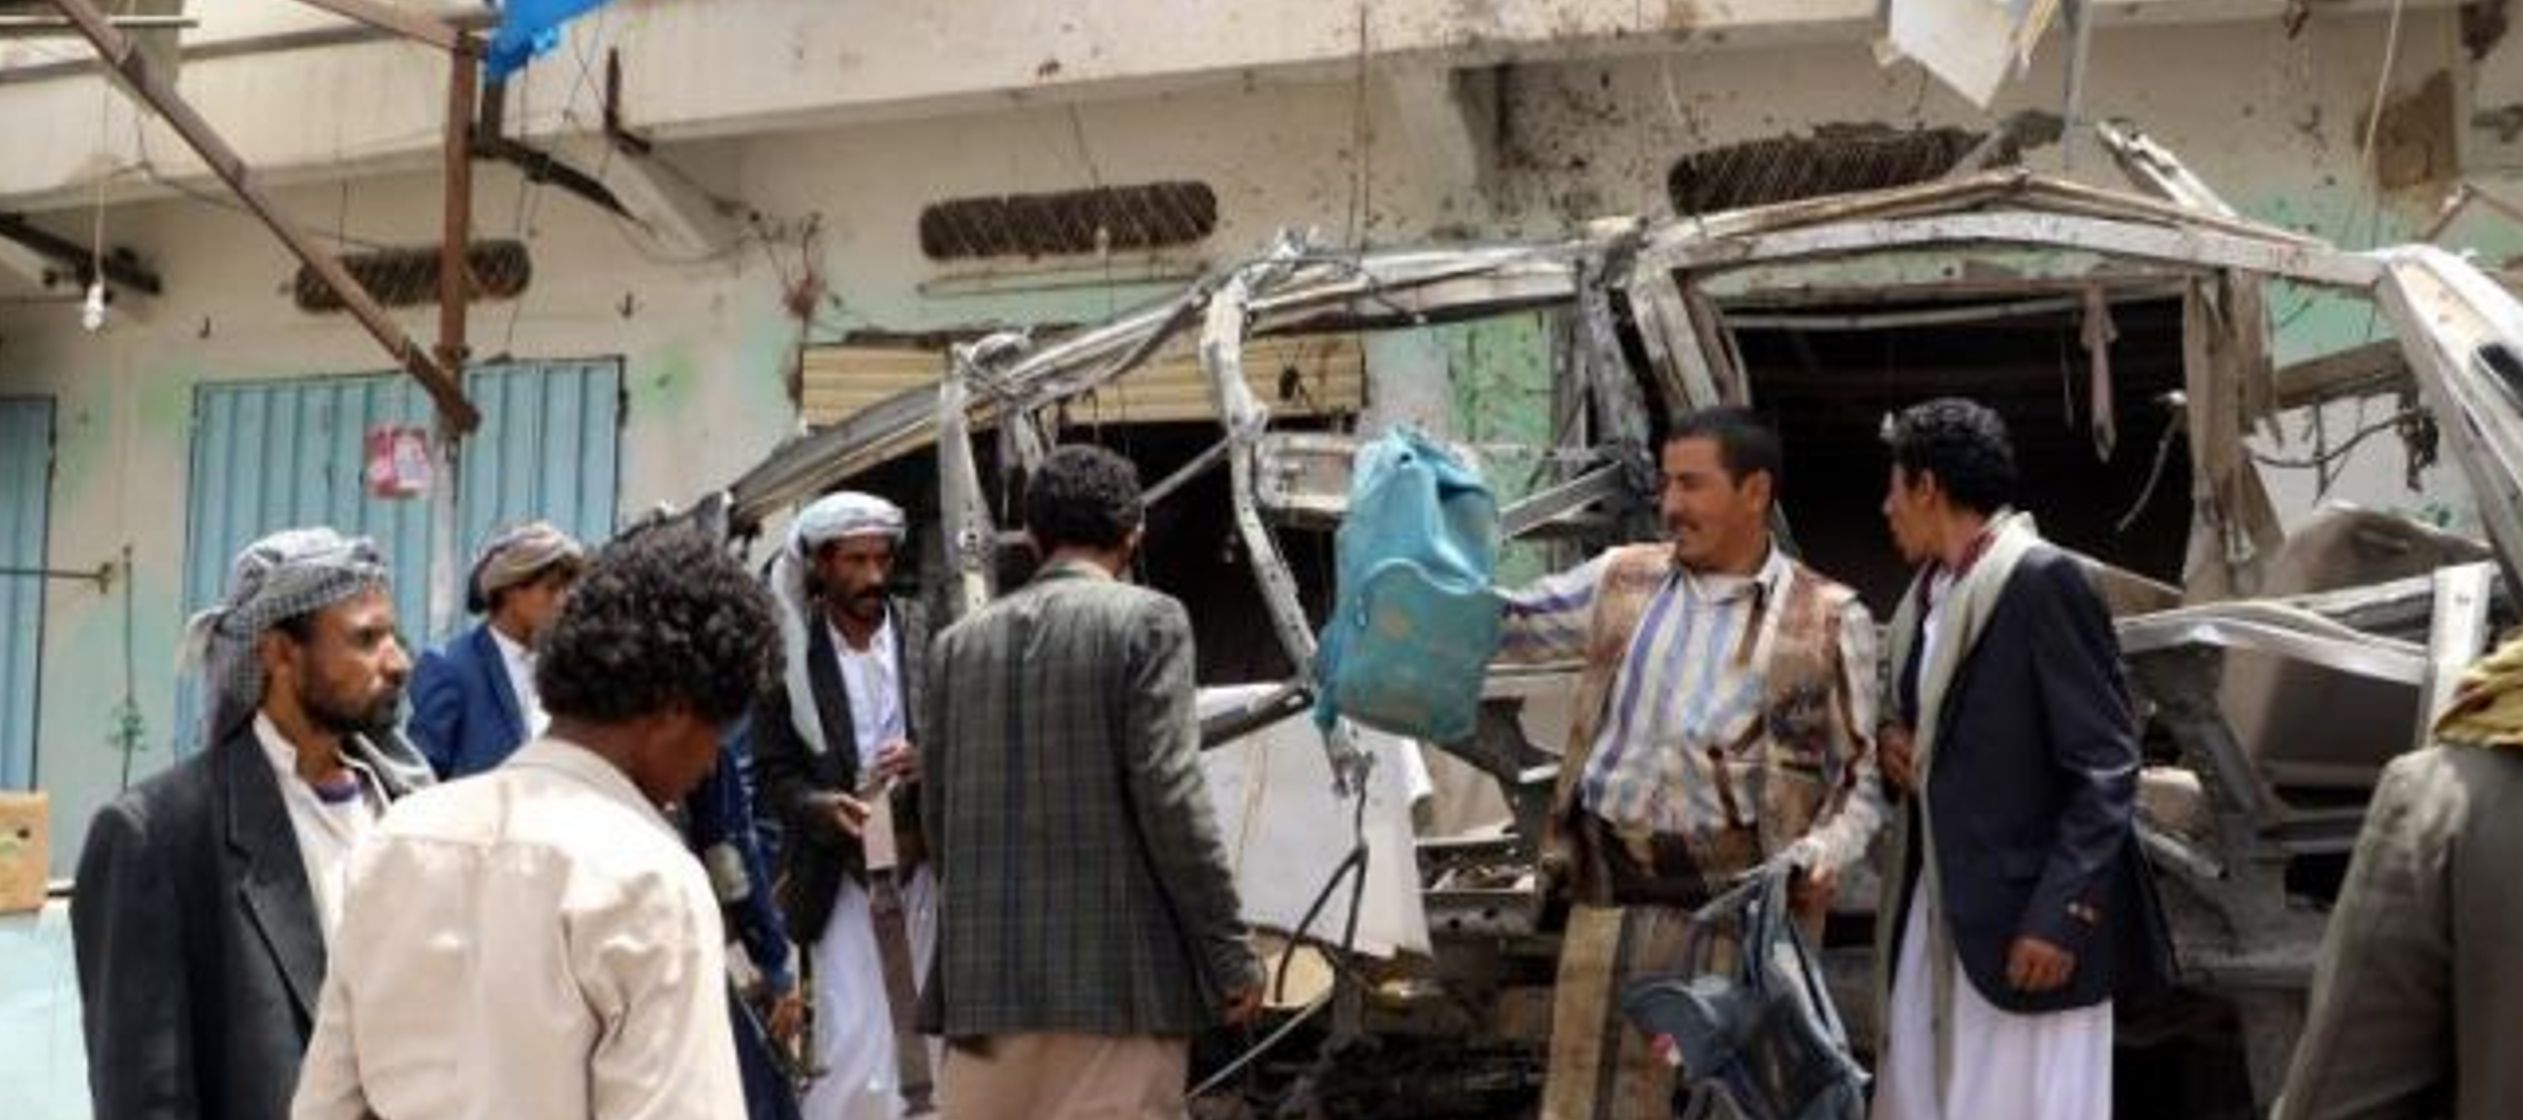 Un bombardeo de la coalición árabe contra vehículos en un mercado de Saada...